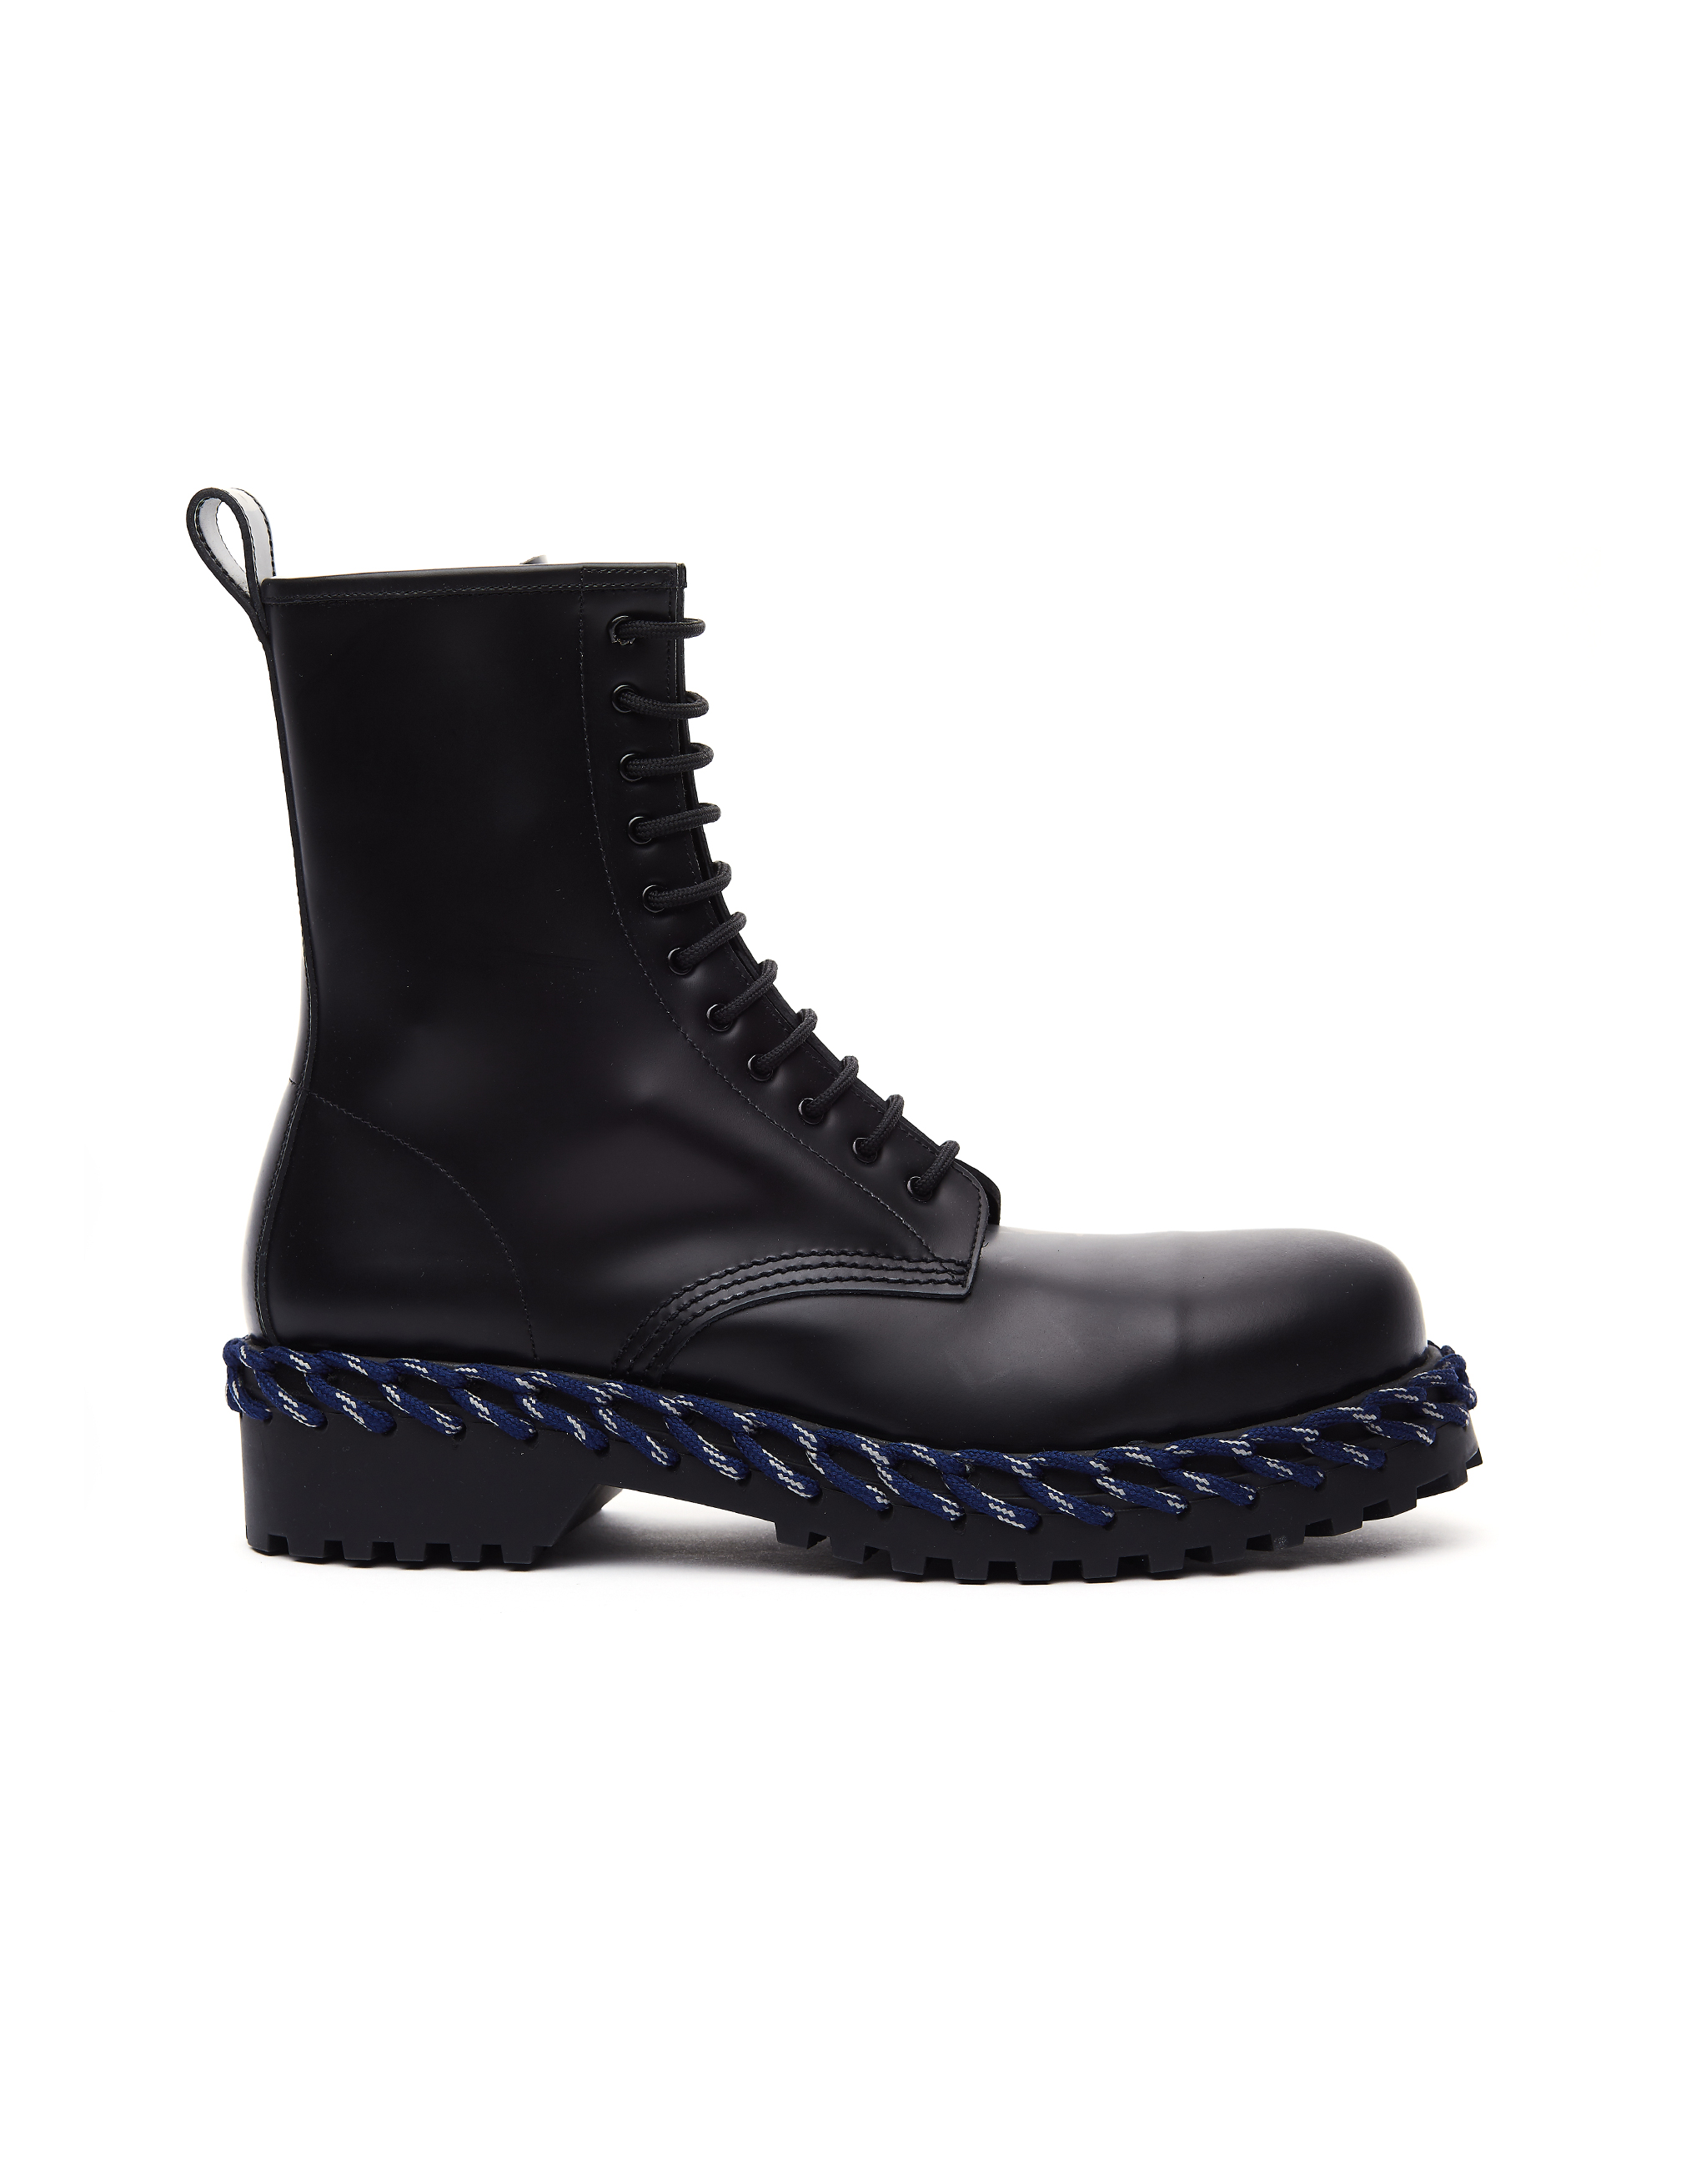 Кожаные ботинки с декоративной шнуровкой Balenciaga 530244/1007, размер sm;sm